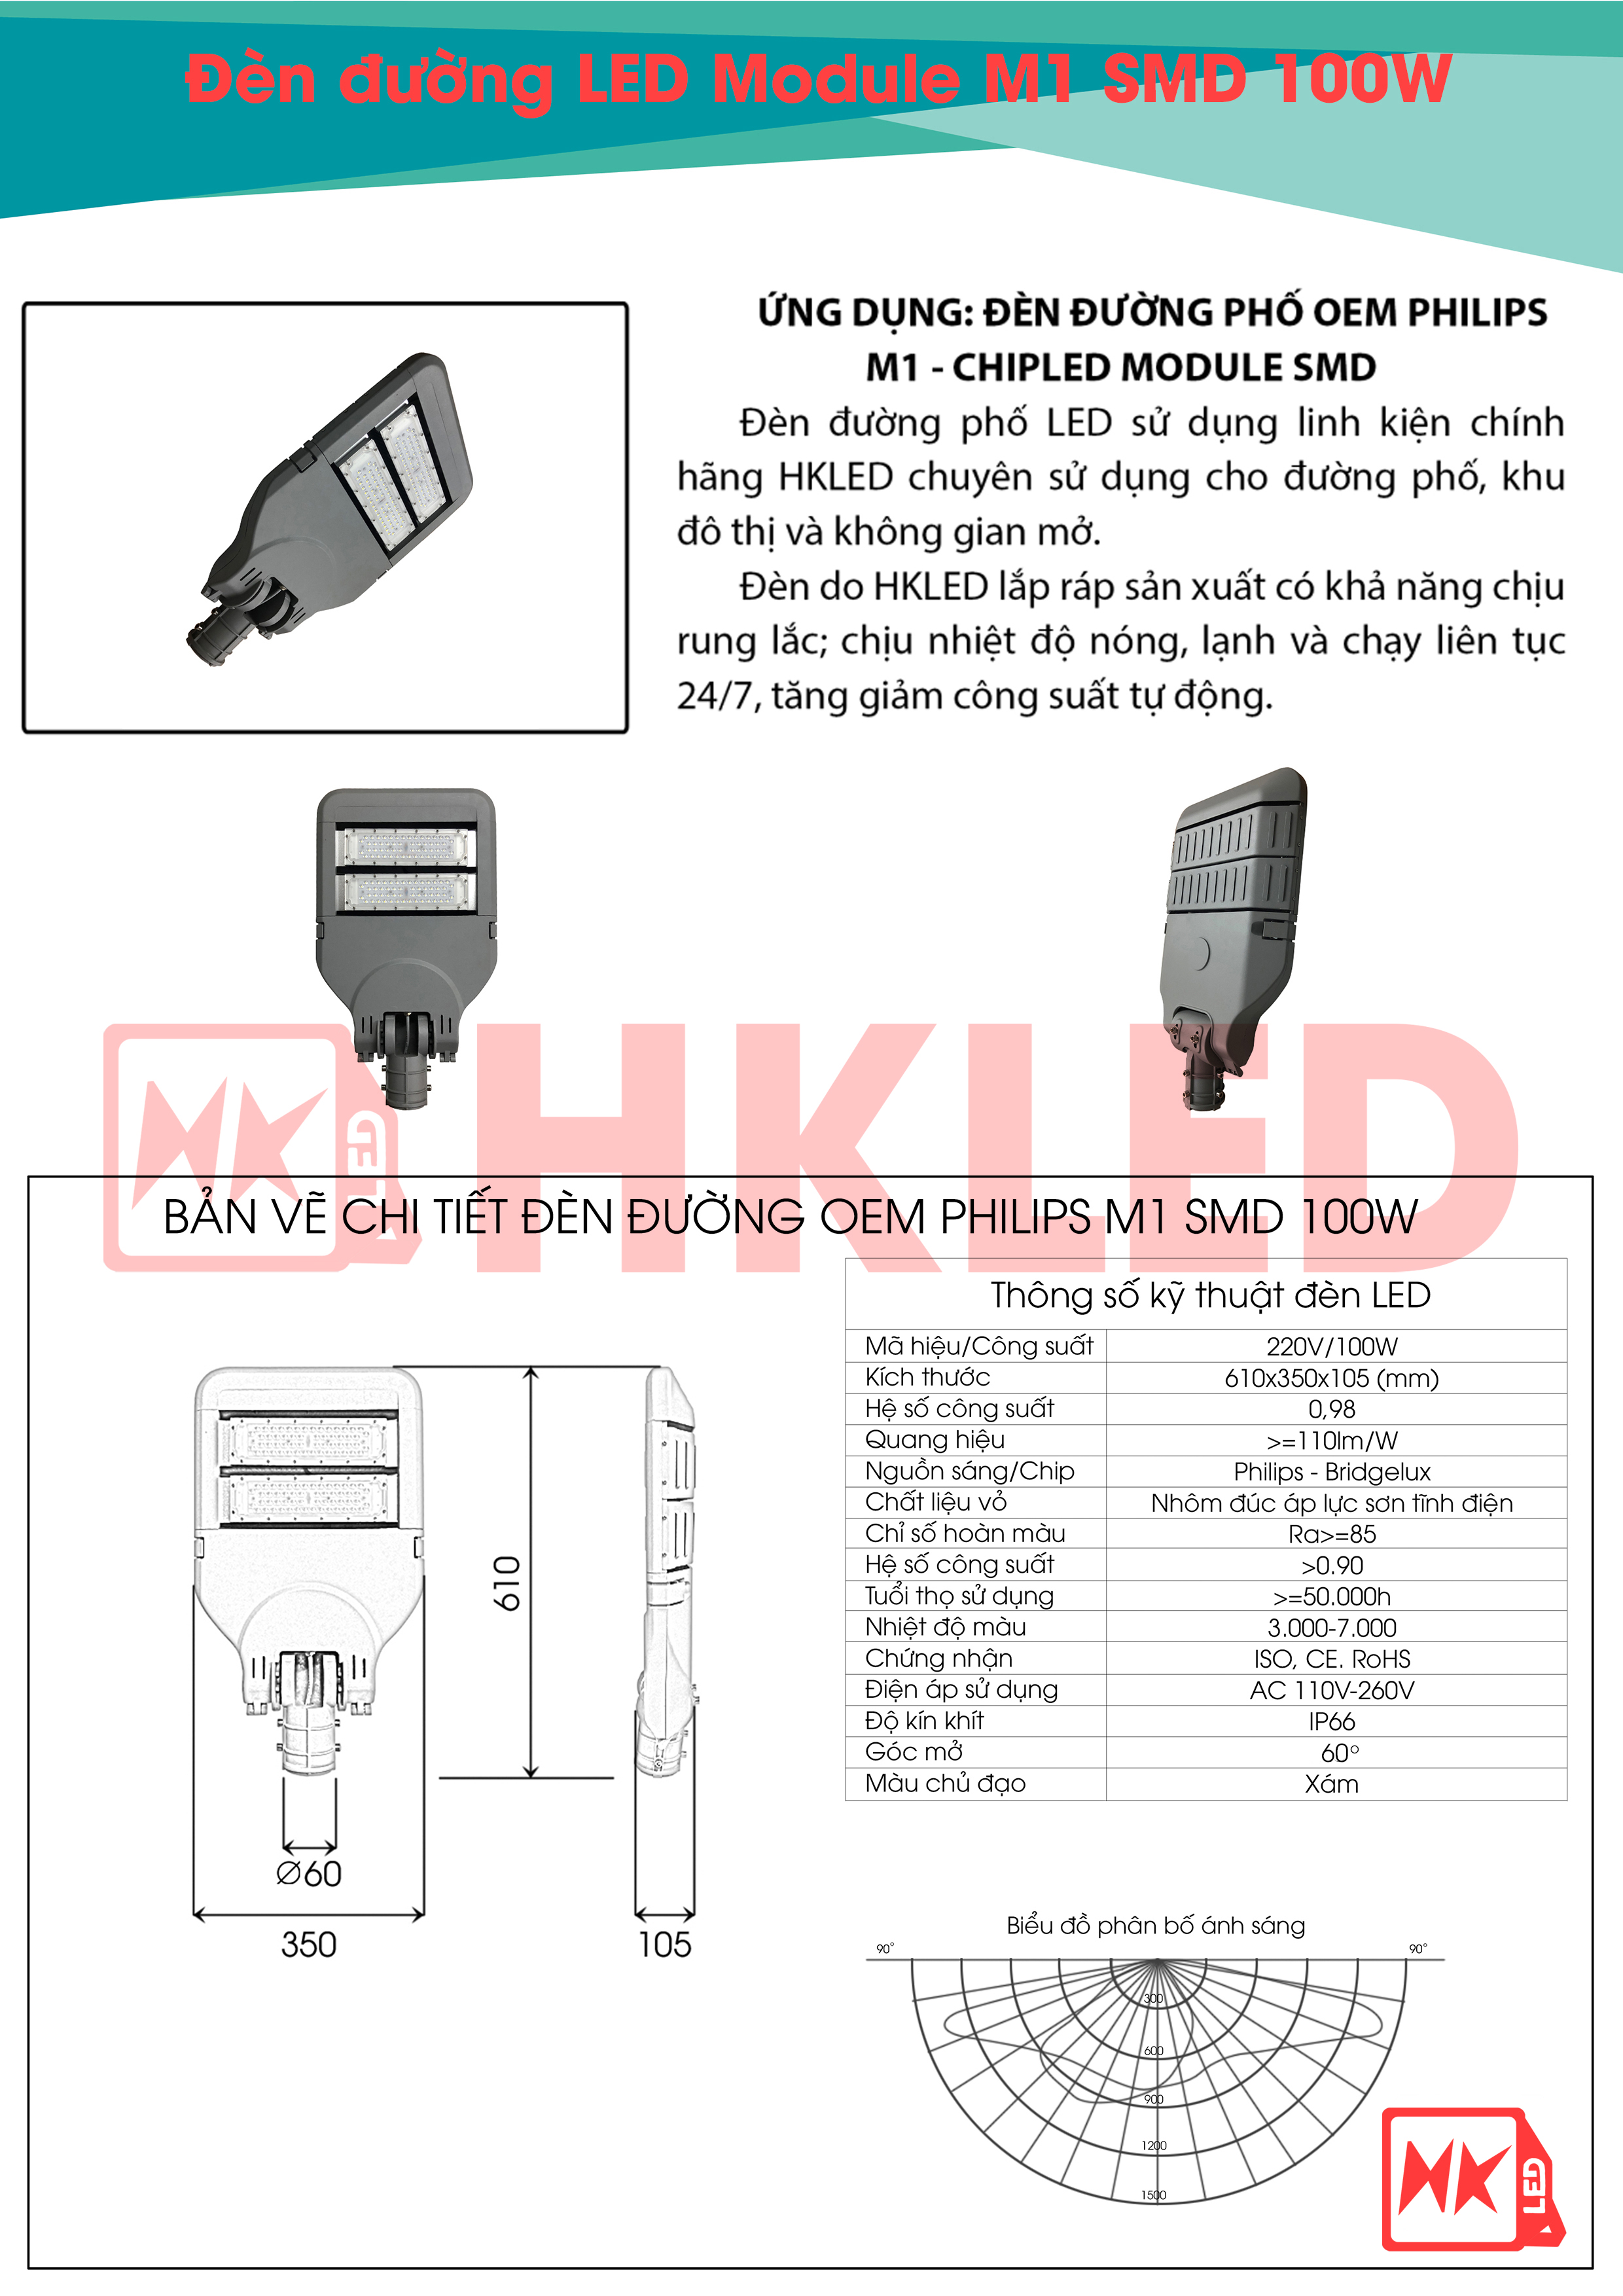 Ứng dụng, bản vẽ chi tiết và thông số kỹ thuật đèn đường LED OEM Philips M1 Module SMD 100W